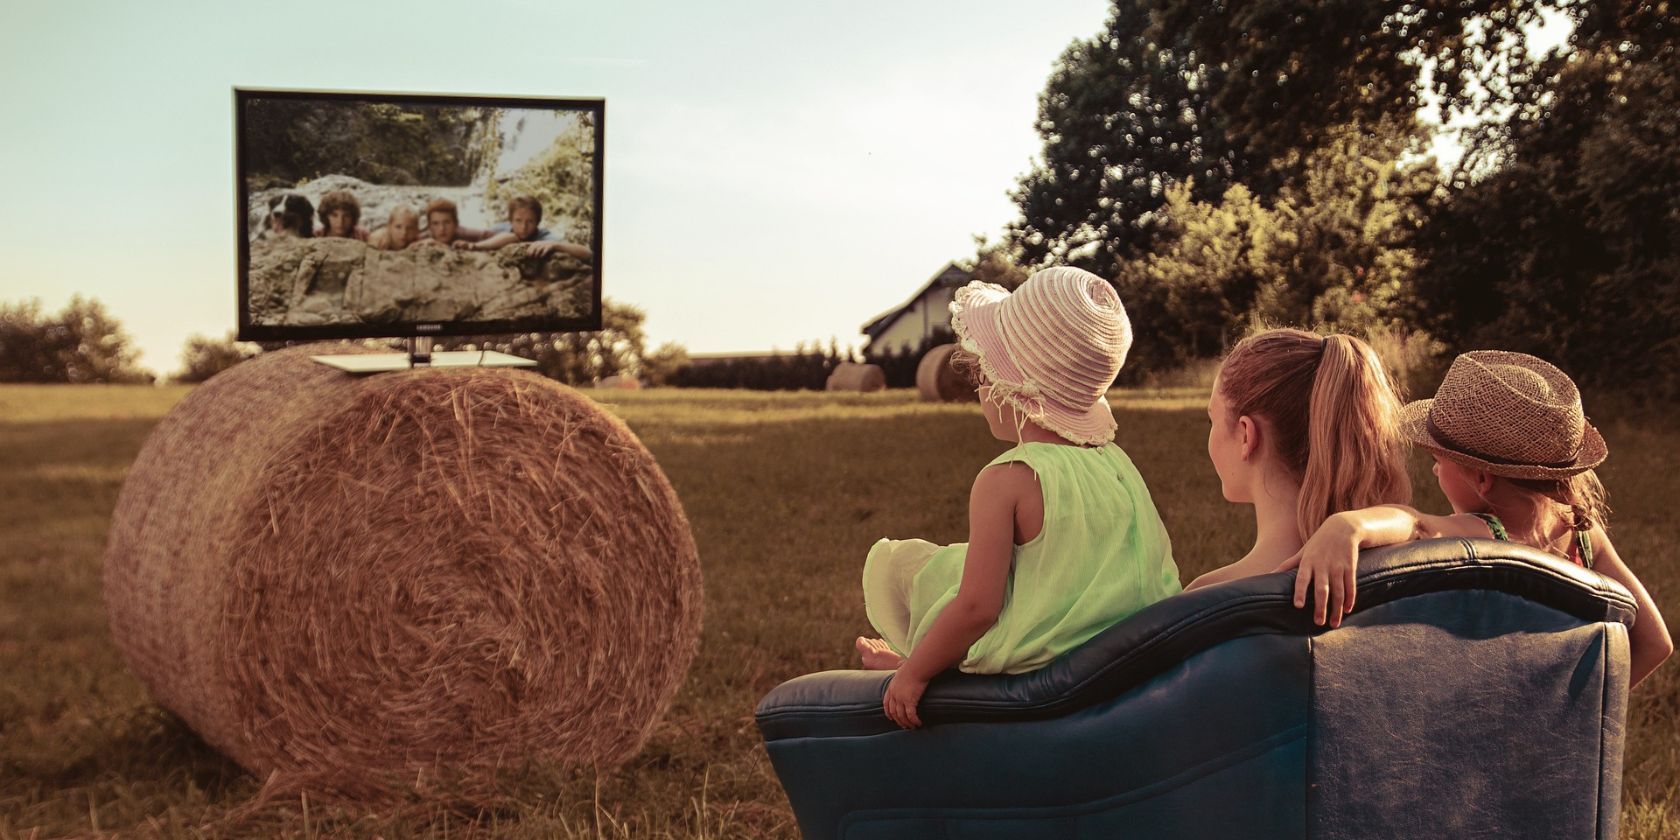 Một nhóm trẻ em trên cánh đồng đang xem TV ngồi trên một đống cỏ khô